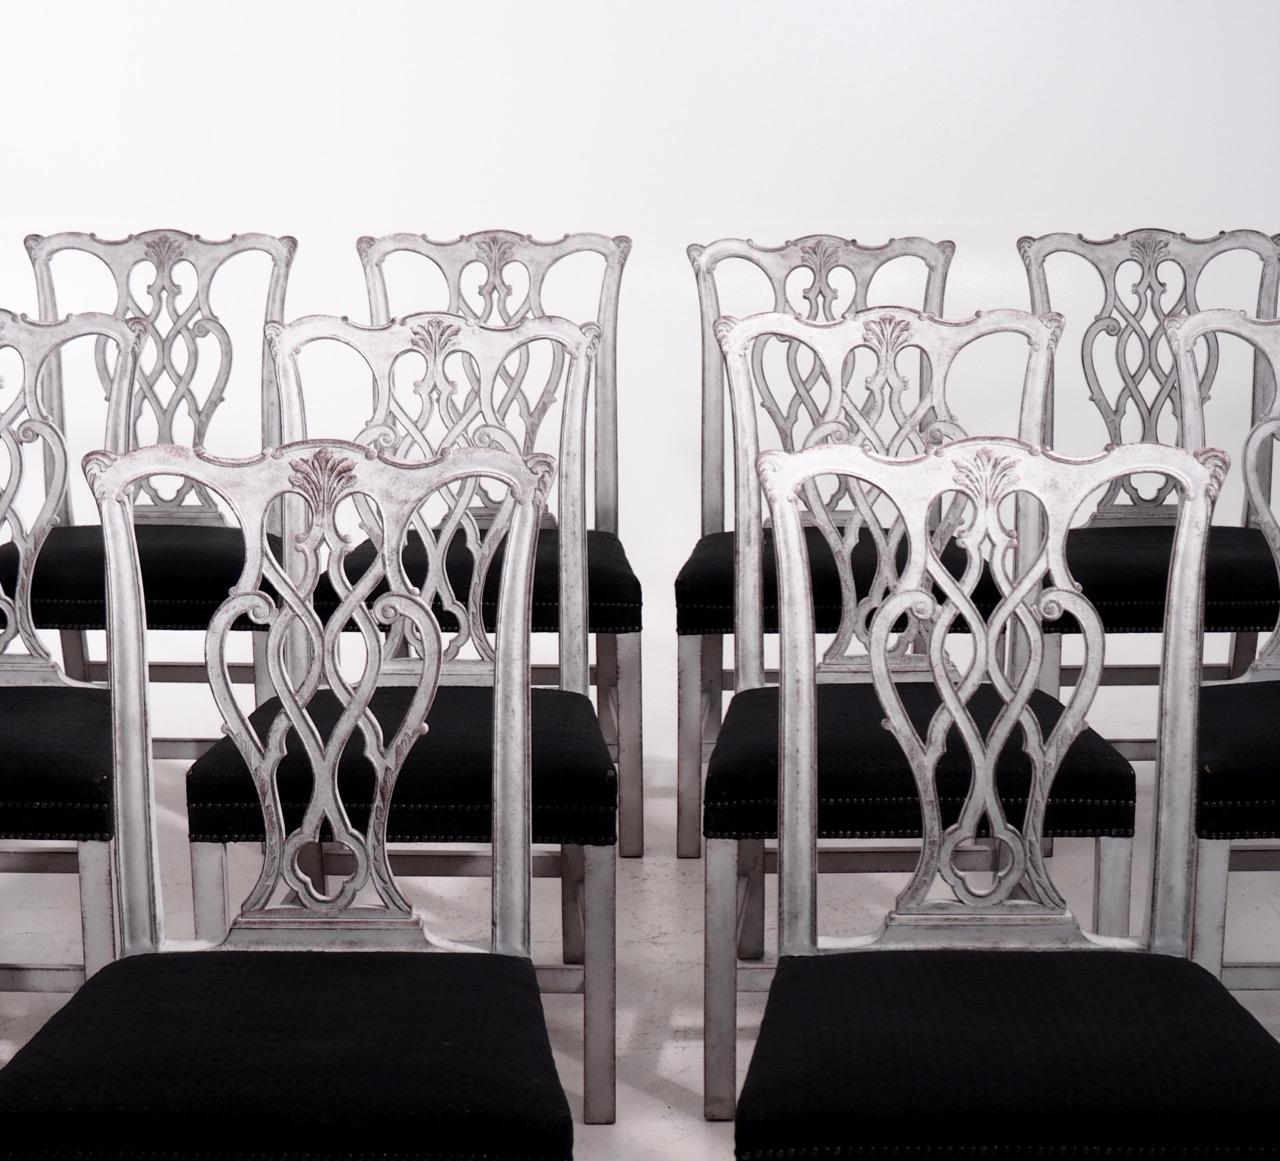 Seltener Satz von 12 europäischen Stühlen, reich geschnitzt, gepolstert mit schwarzem Rosshaar. Kleine Beschädigung der Polsterung, 19. Jahrhundert.